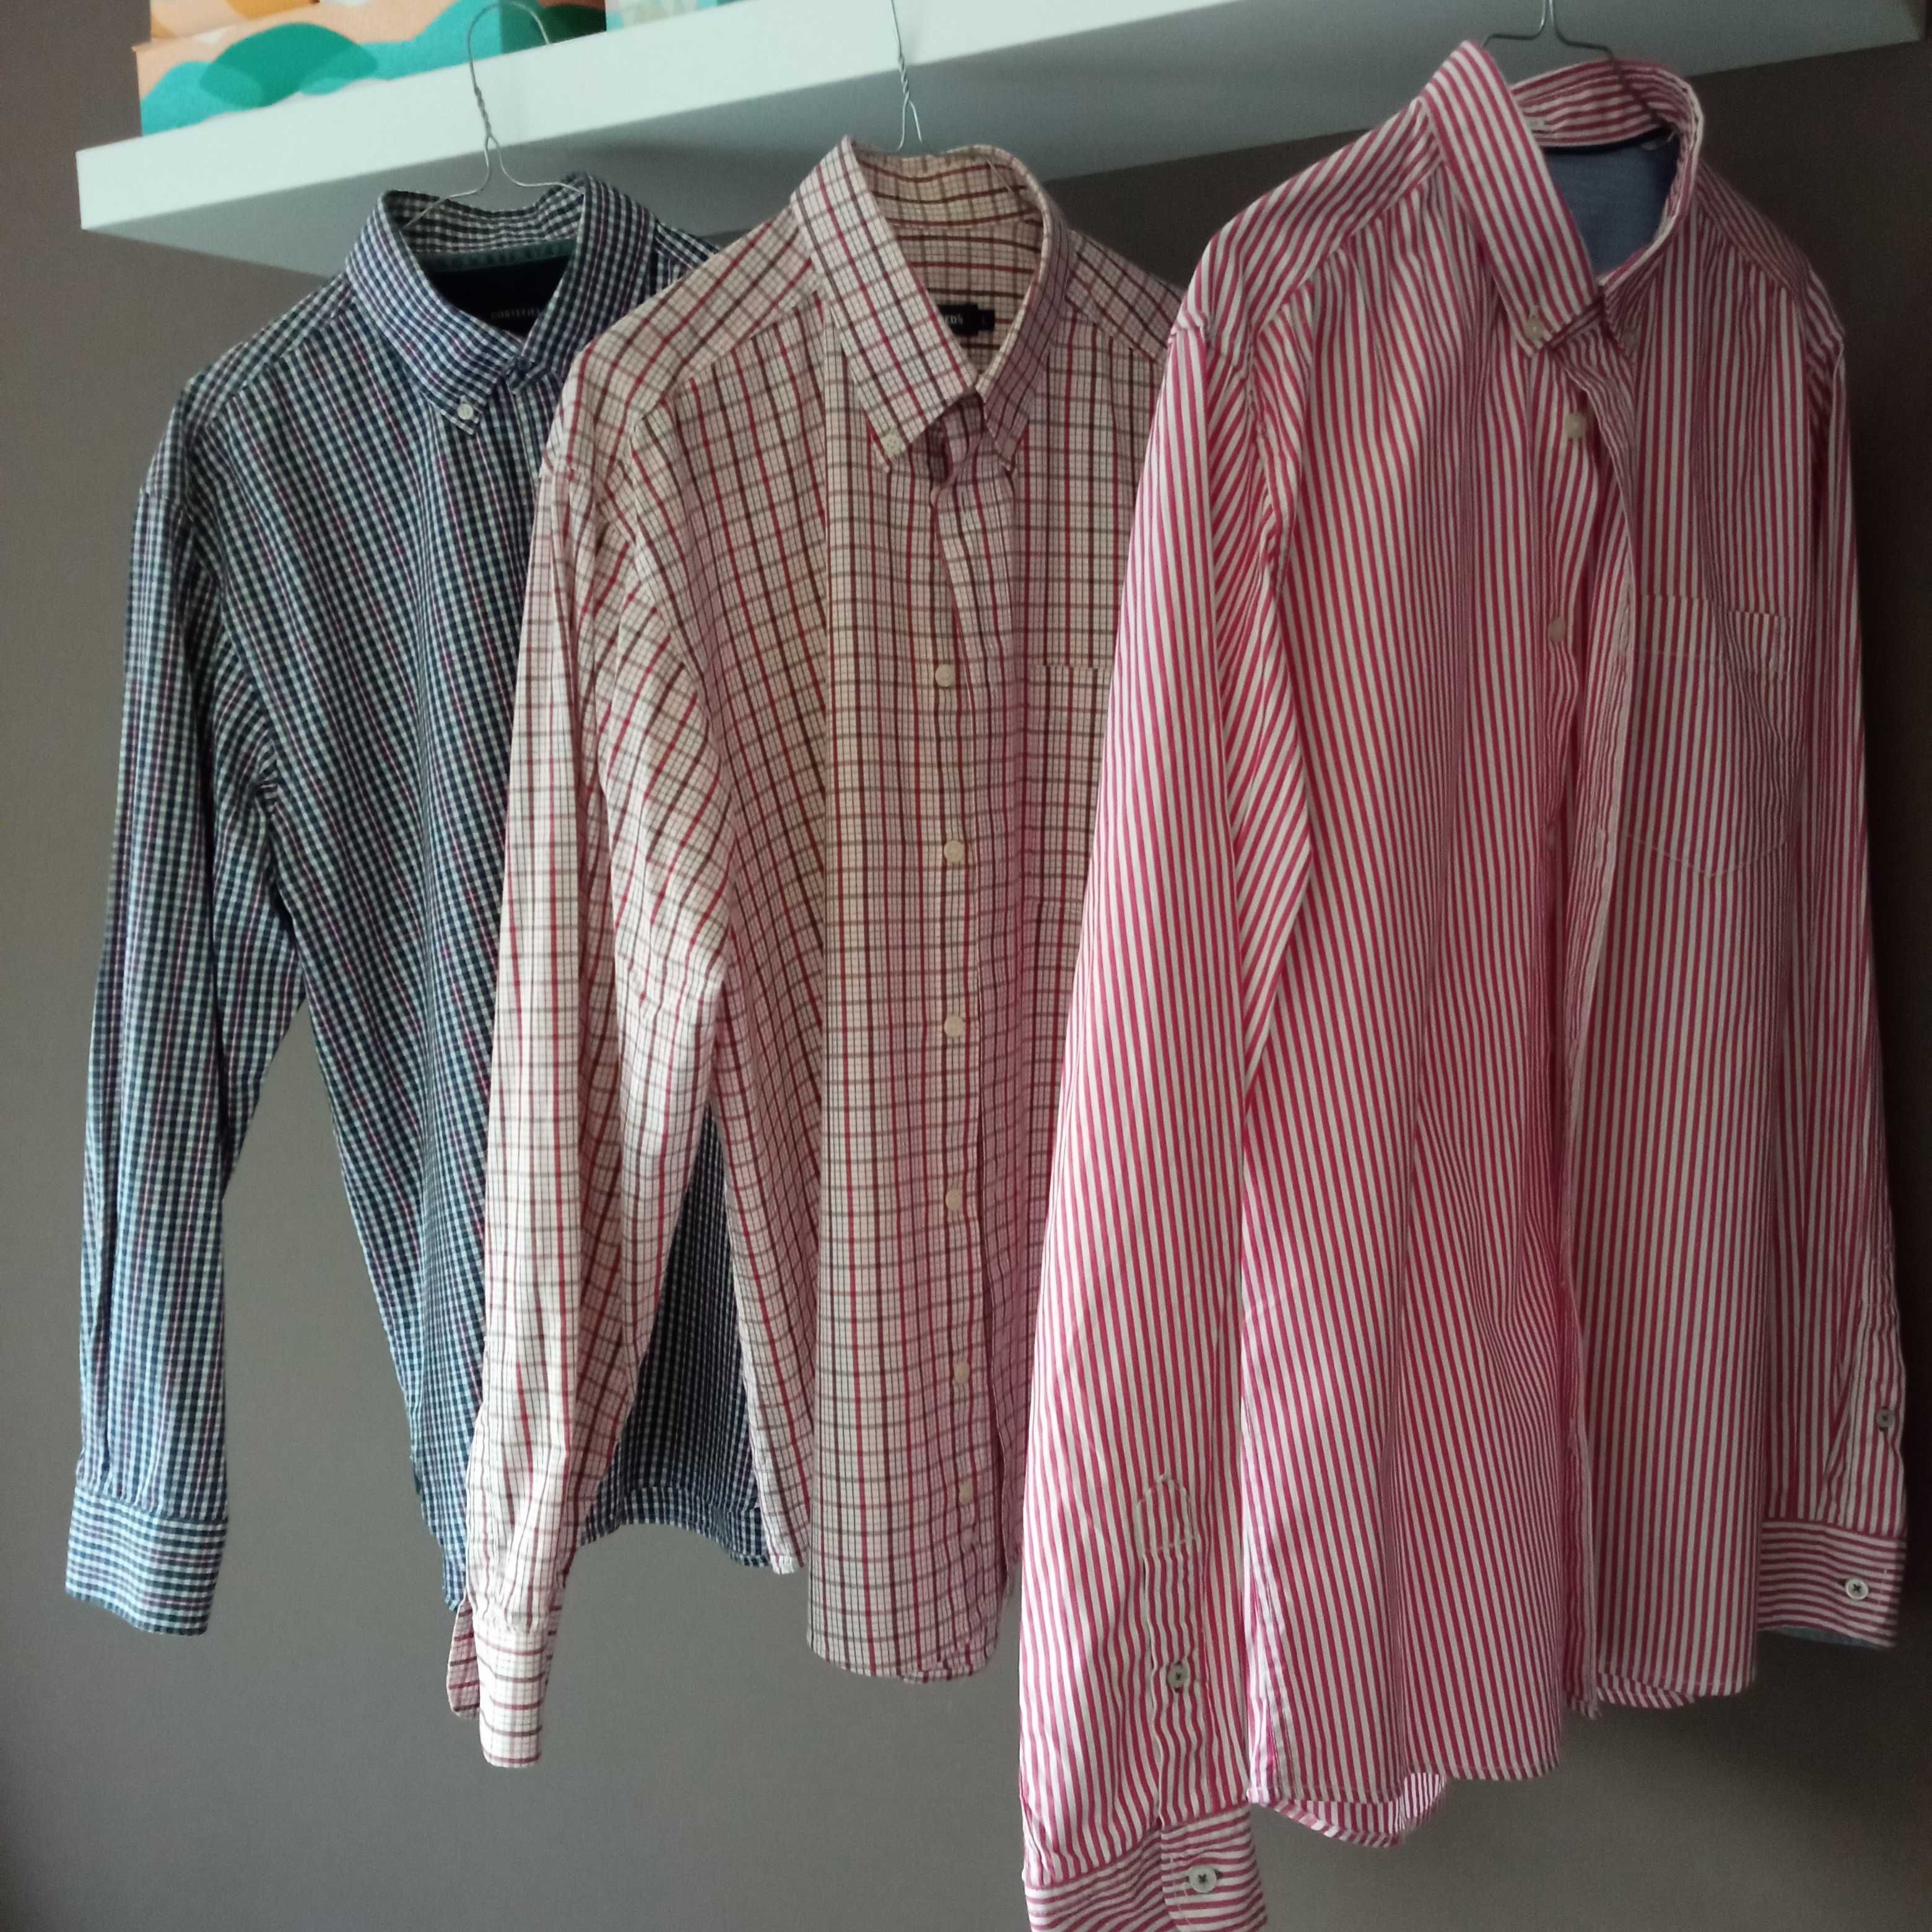 Camisas Cortfield, Nunes Correa...tamanhos L, XL, 40, 41, 42